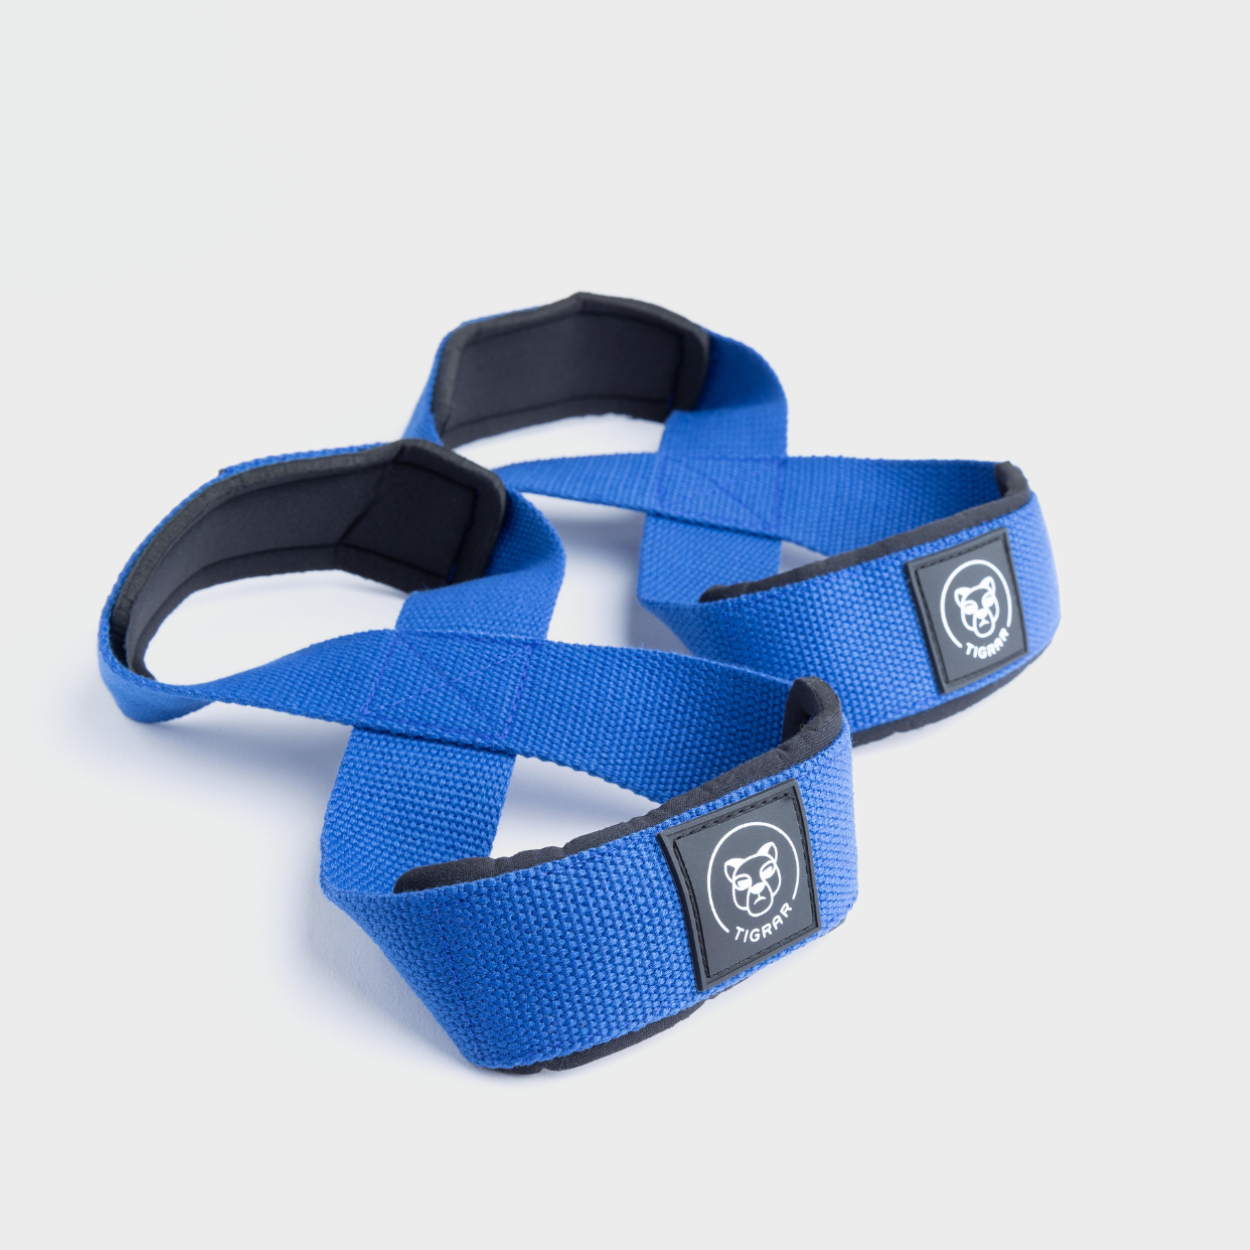 Sterke blauwe lifting straps van Tigrar in Figure 8 design, perfect voor krachttraining, op een grijze achtergrond.